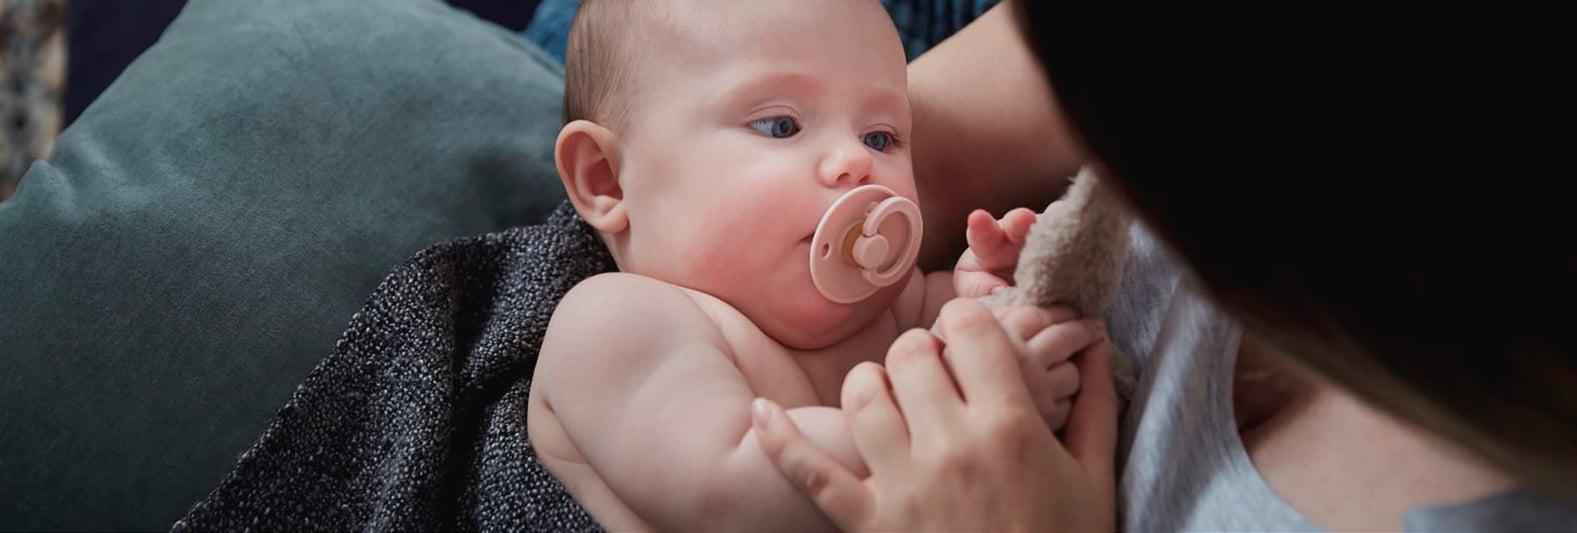 Une femme et son bébé conçu grâce à un traitement de fertilité avec du sperme de donneur de qualité supérieure Cryos